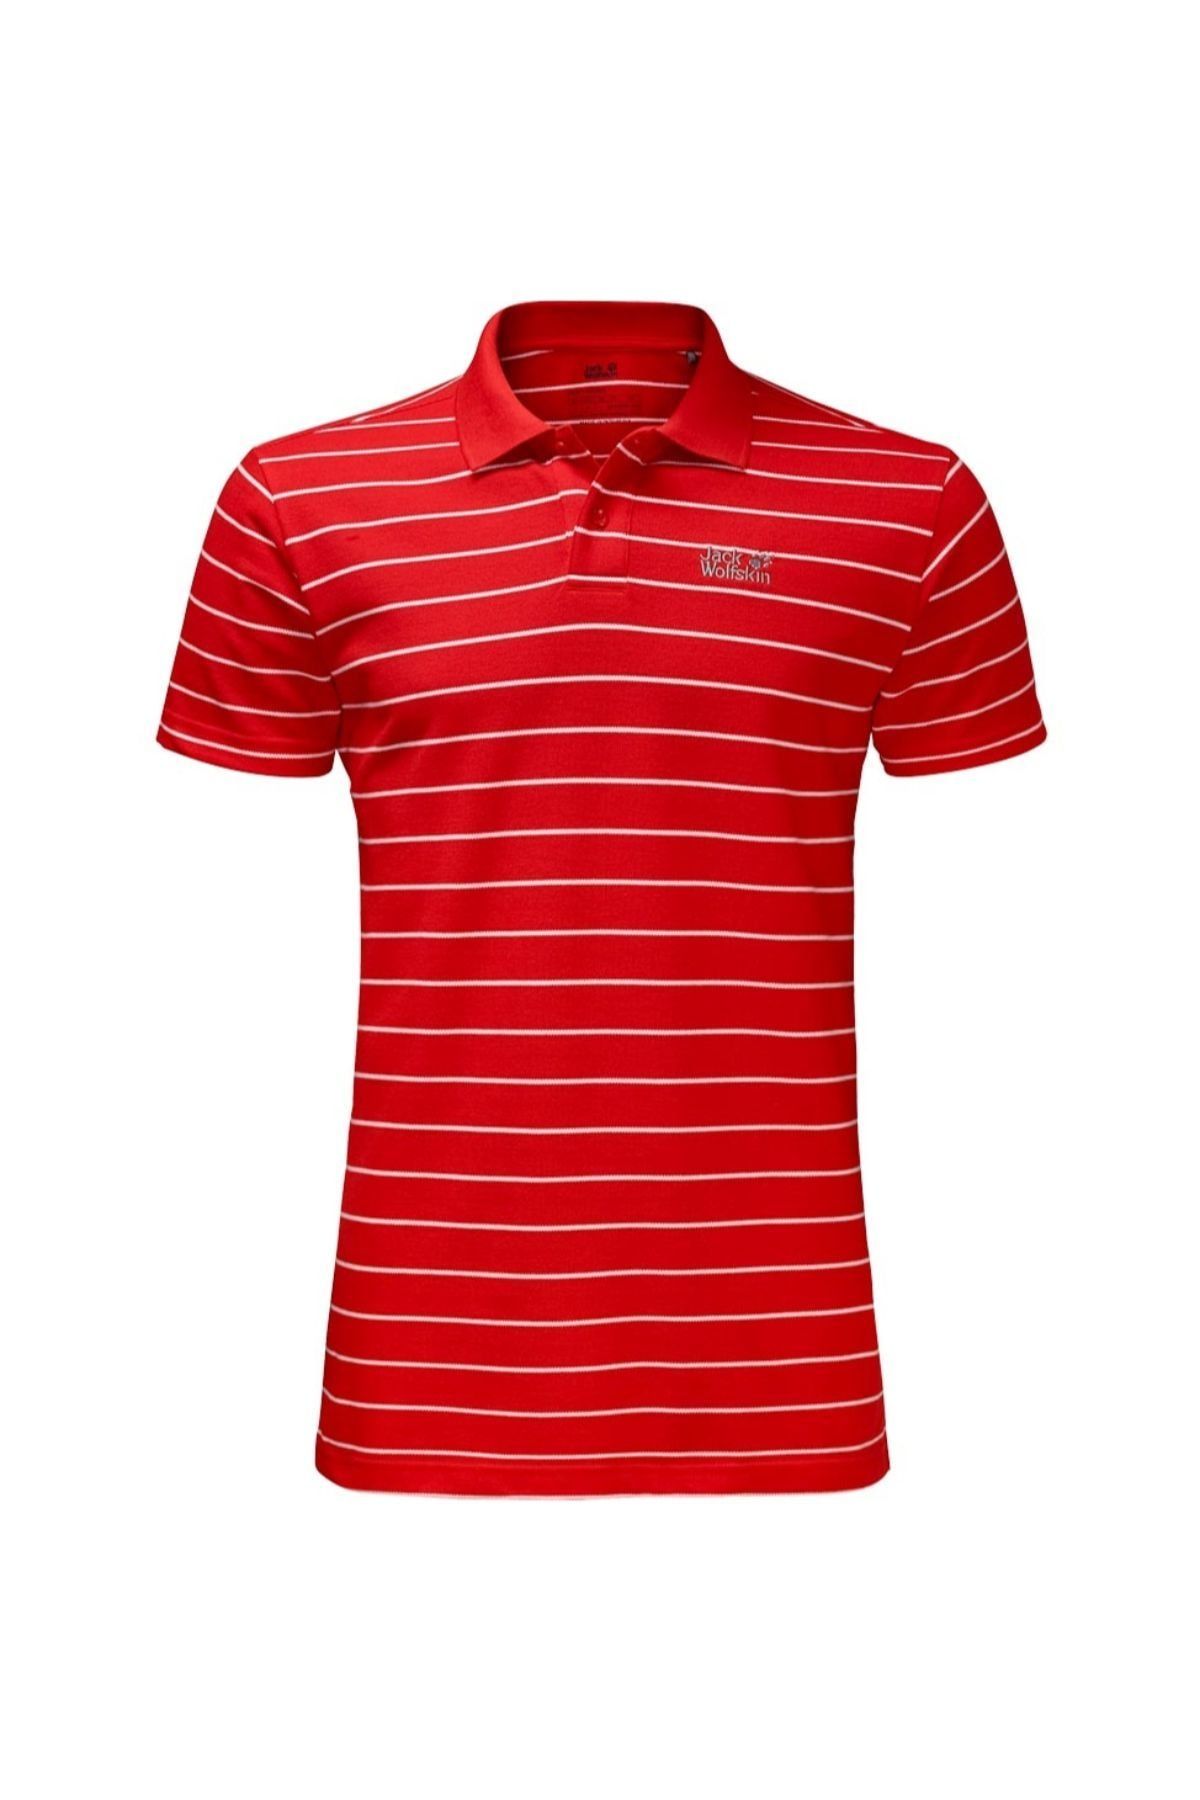 Jack Wolfskin Pique Striped Erkek Polo T-Shirt 1805661